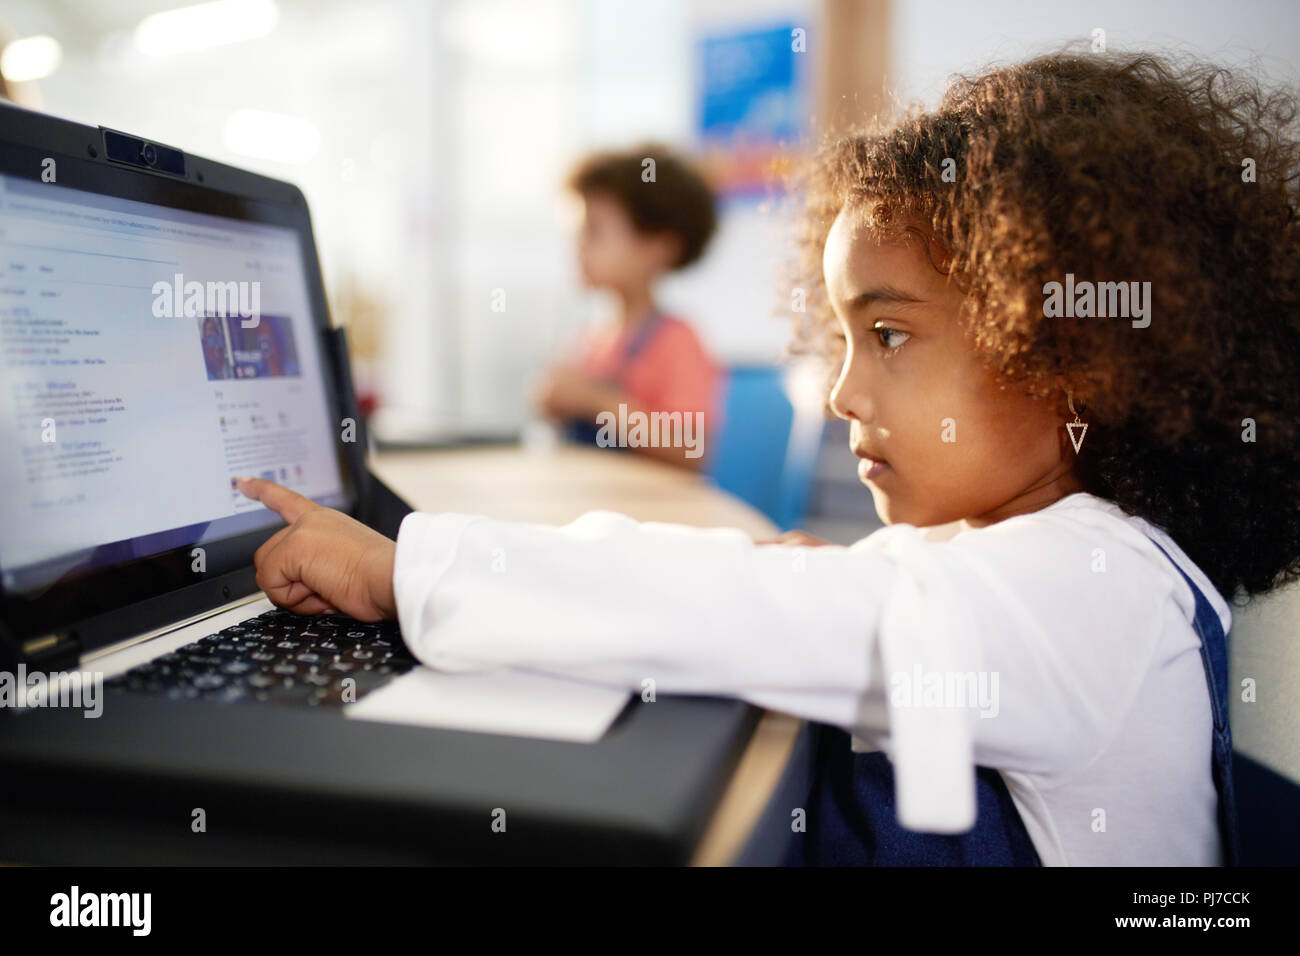 Curious girl using laptop Stock Photo